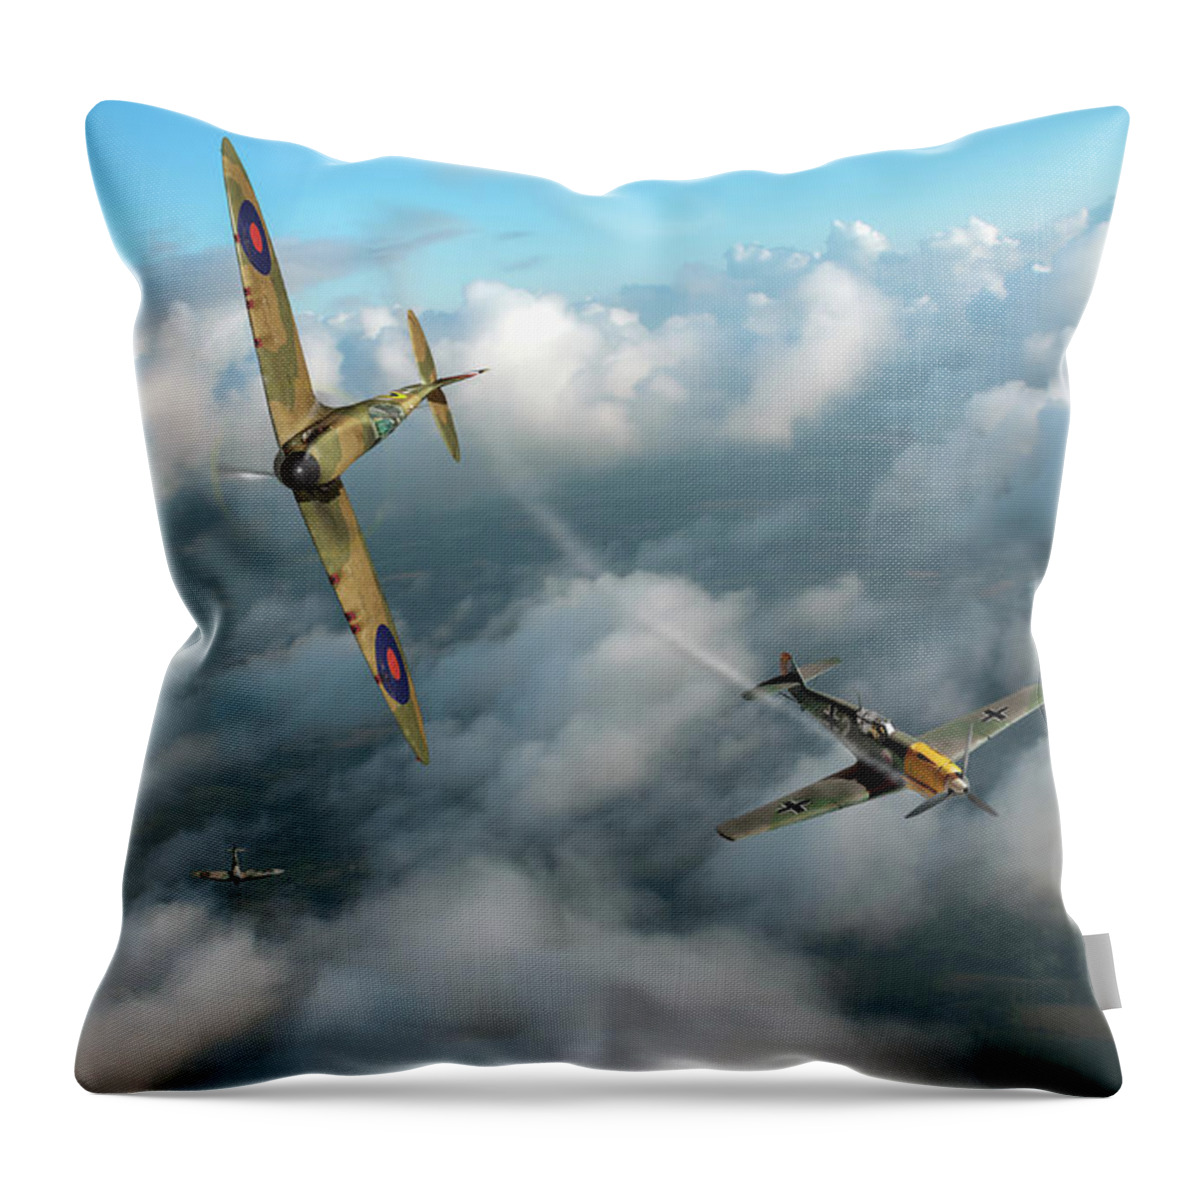 Spitfire Throw Pillow featuring the photograph Battle of Britain Spitfire shoots down Messerschmitt Bf 109 by Gary Eason